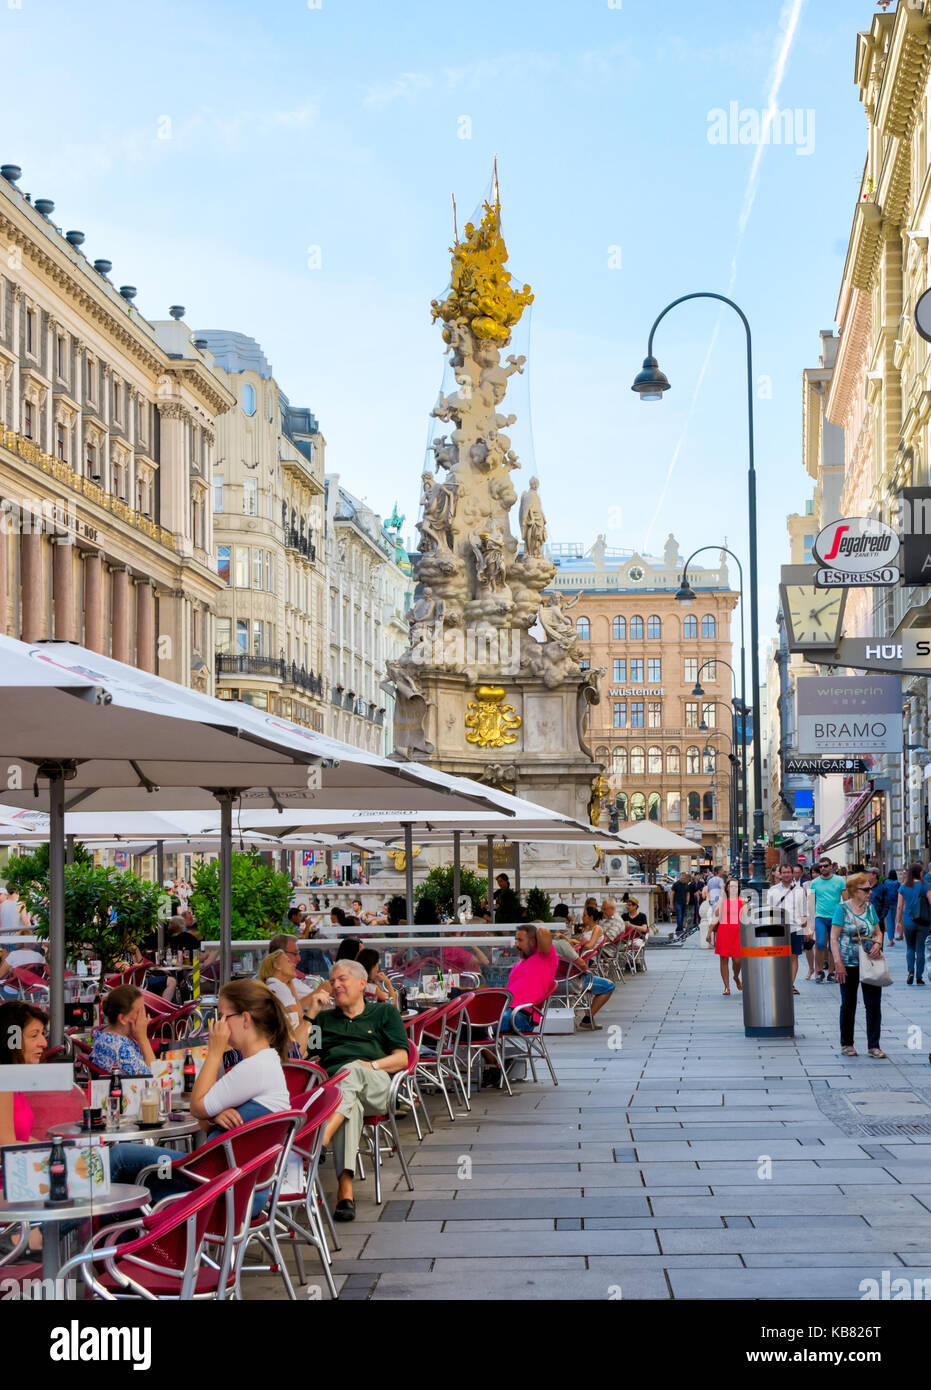 WIEN, ÖSTERREICH - AUGUST 28: Menschen in einem Restaurant in der Fußgängerzone von Wien, Österreich am 28. August 2017. Foto mit Blick auf die Barockpest Stockfoto